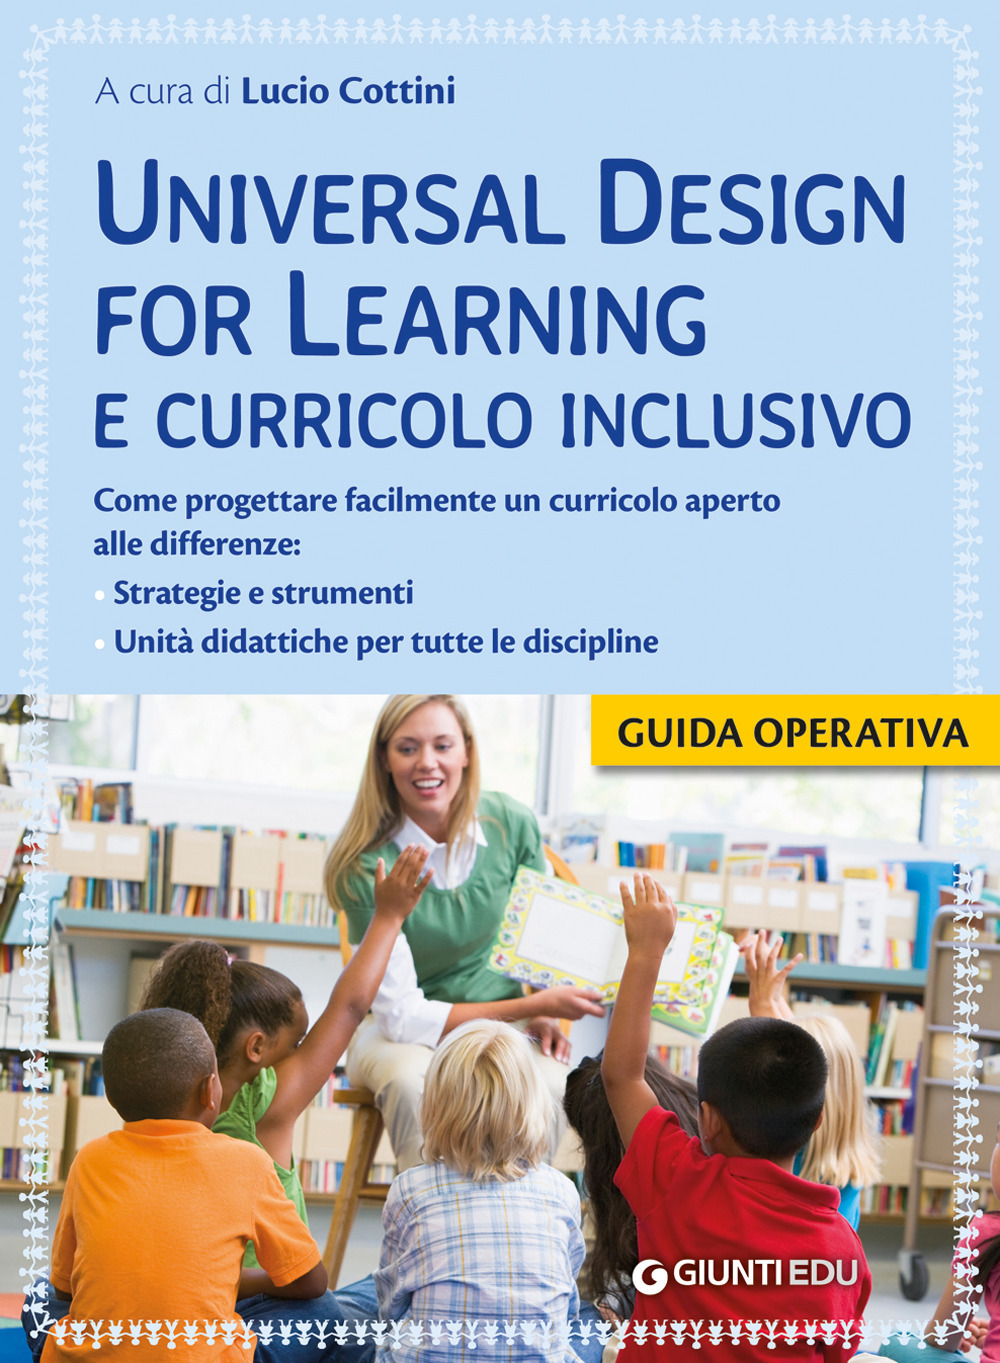 Universal design for learning e curricolo inclusivo